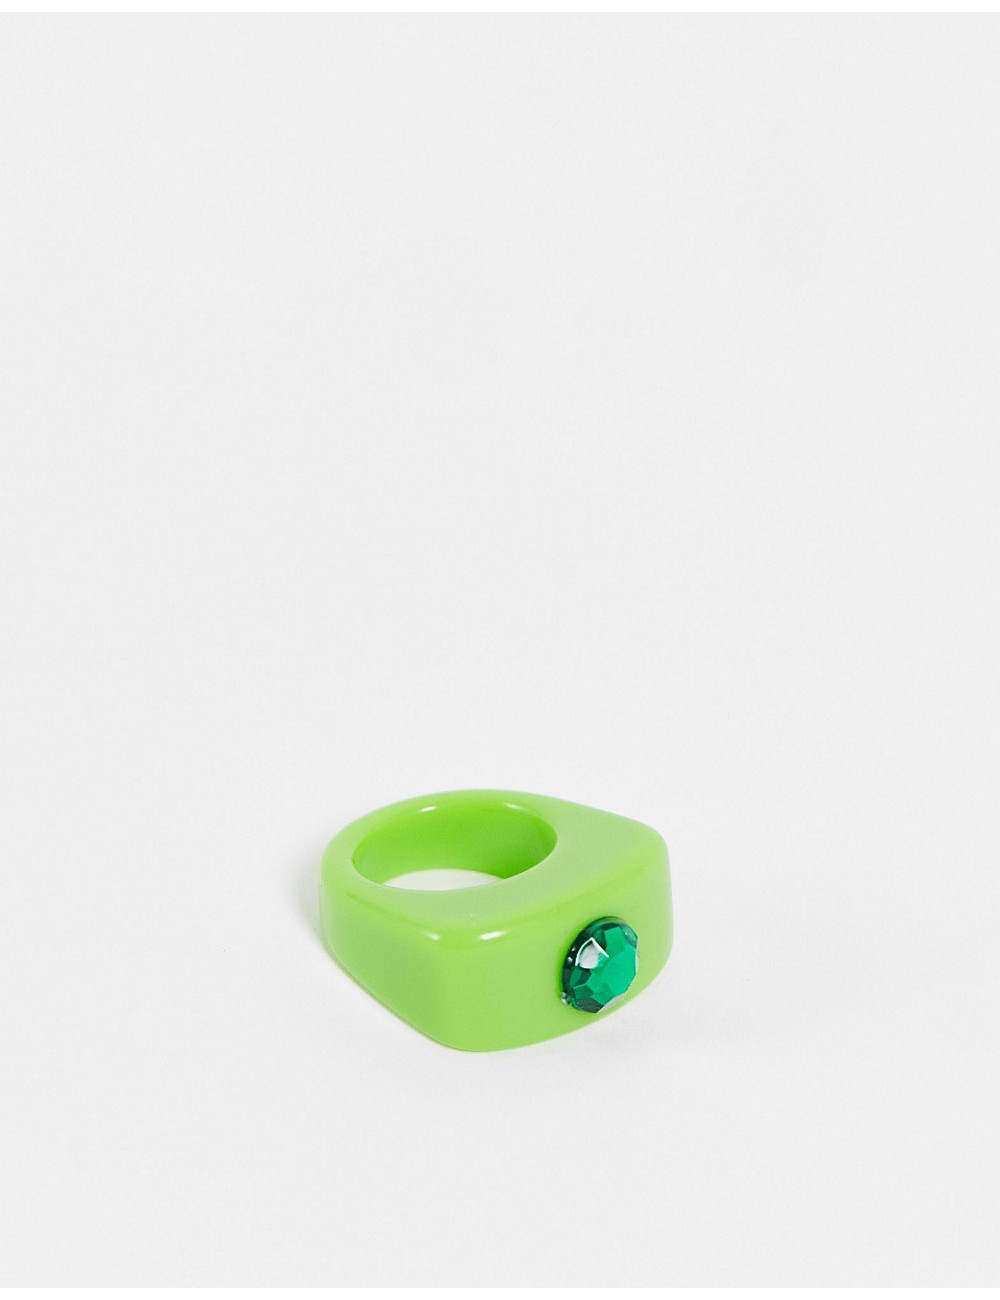 ASOS DESIGN ring in green...